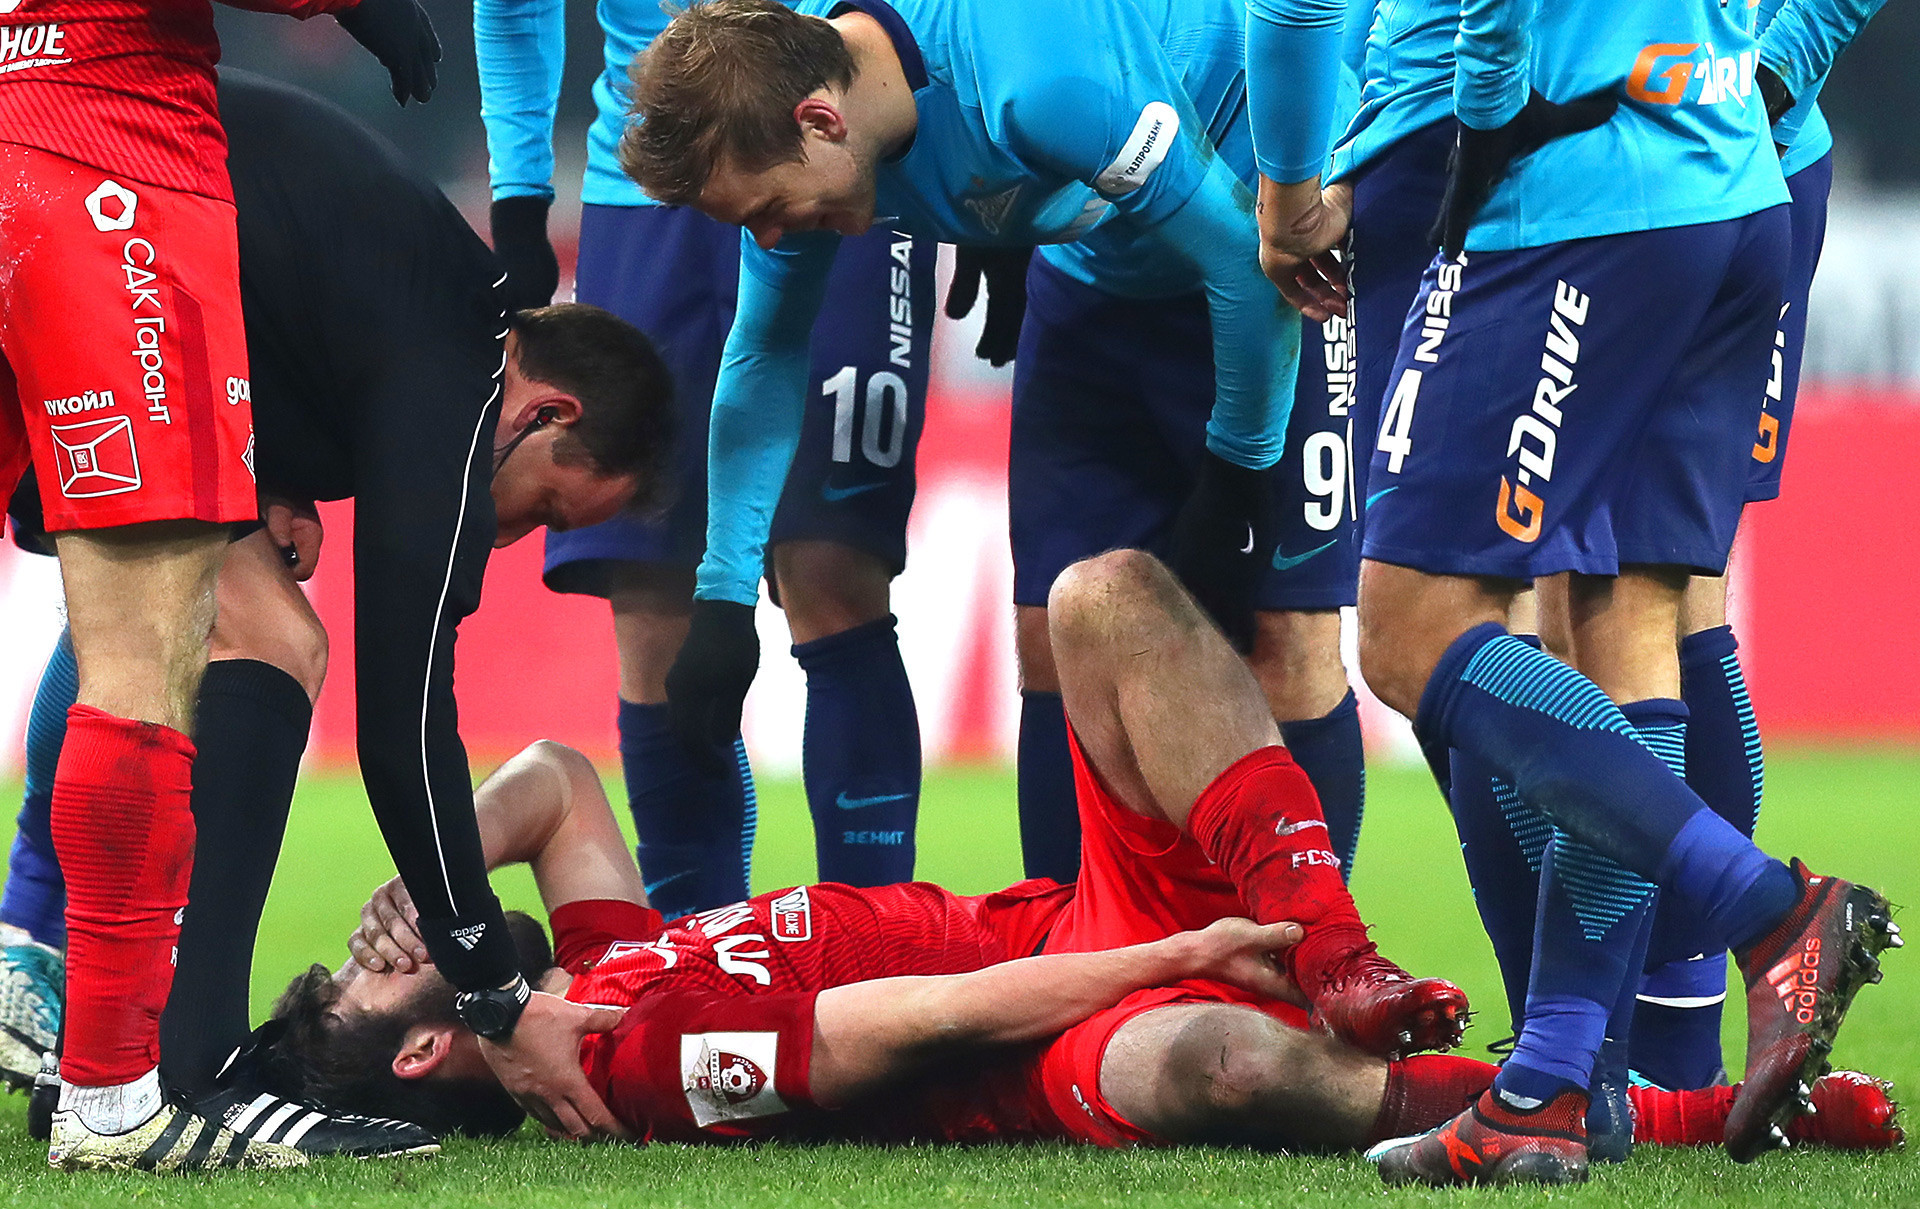 O promissor jogador Gueórgui Djikia não deve jogar na Copa do Mundo após uma lesão no ligamento em janeiro.